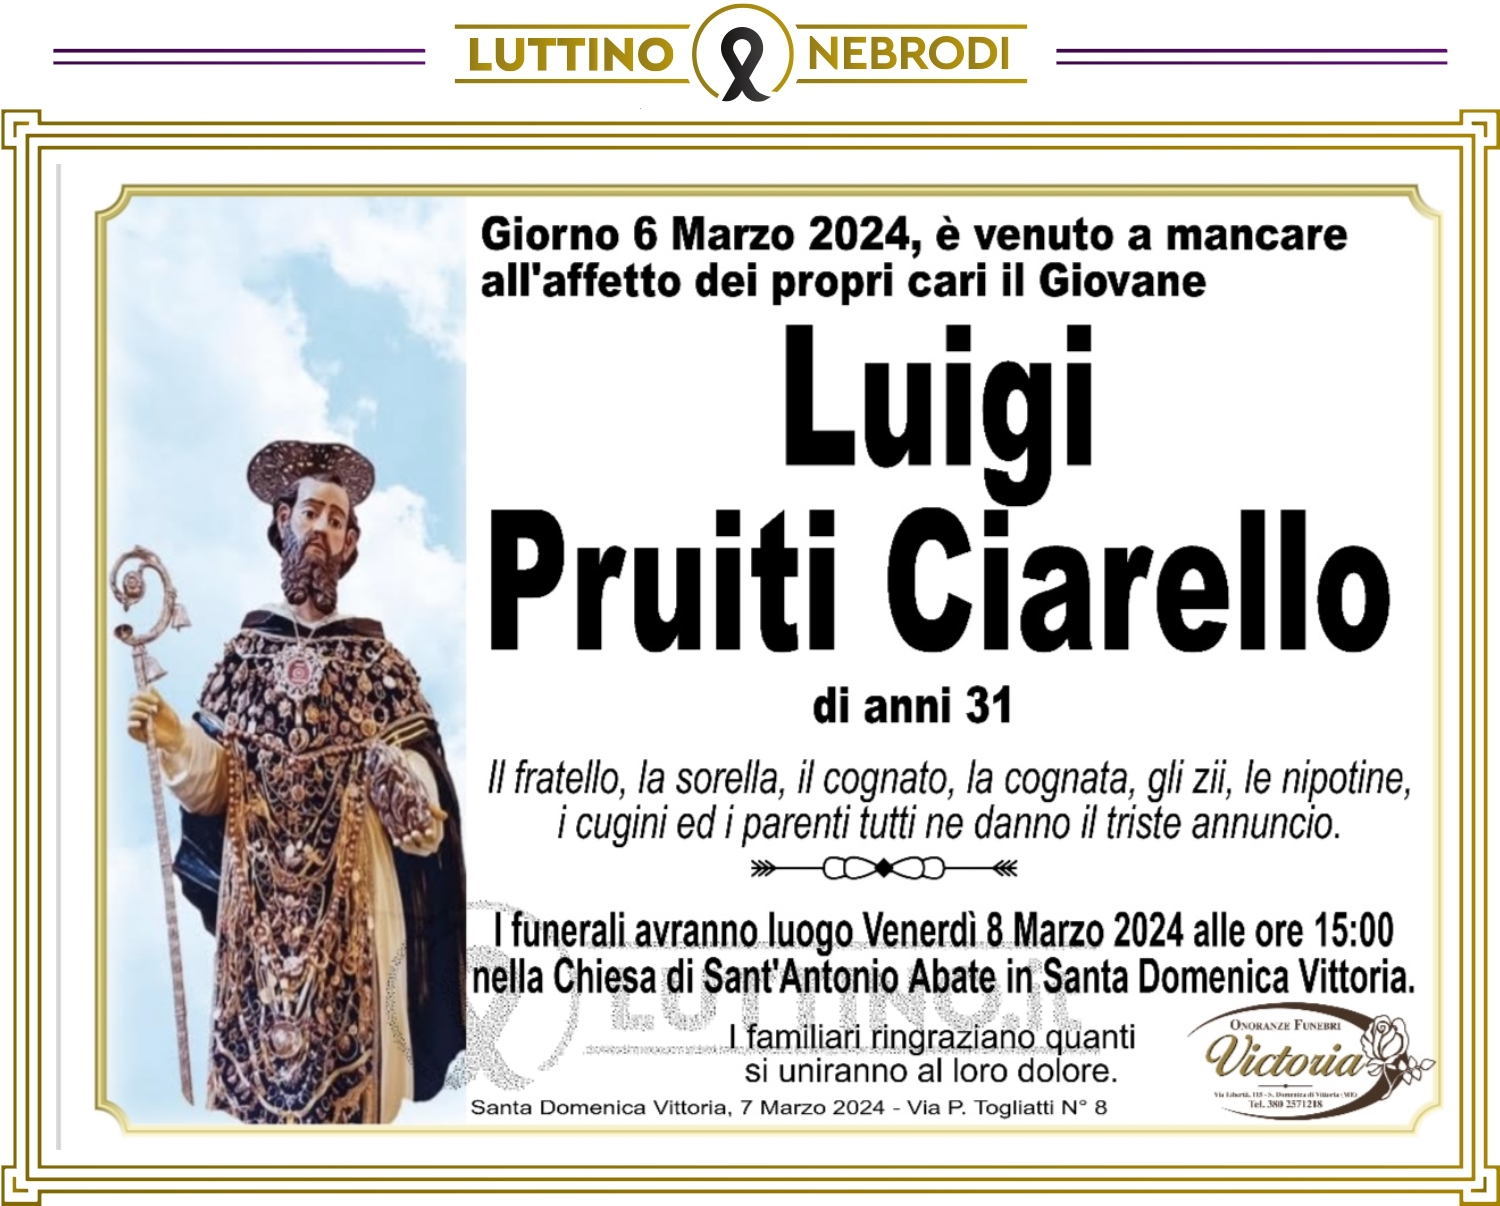 Luigi Pruiti Ciarello